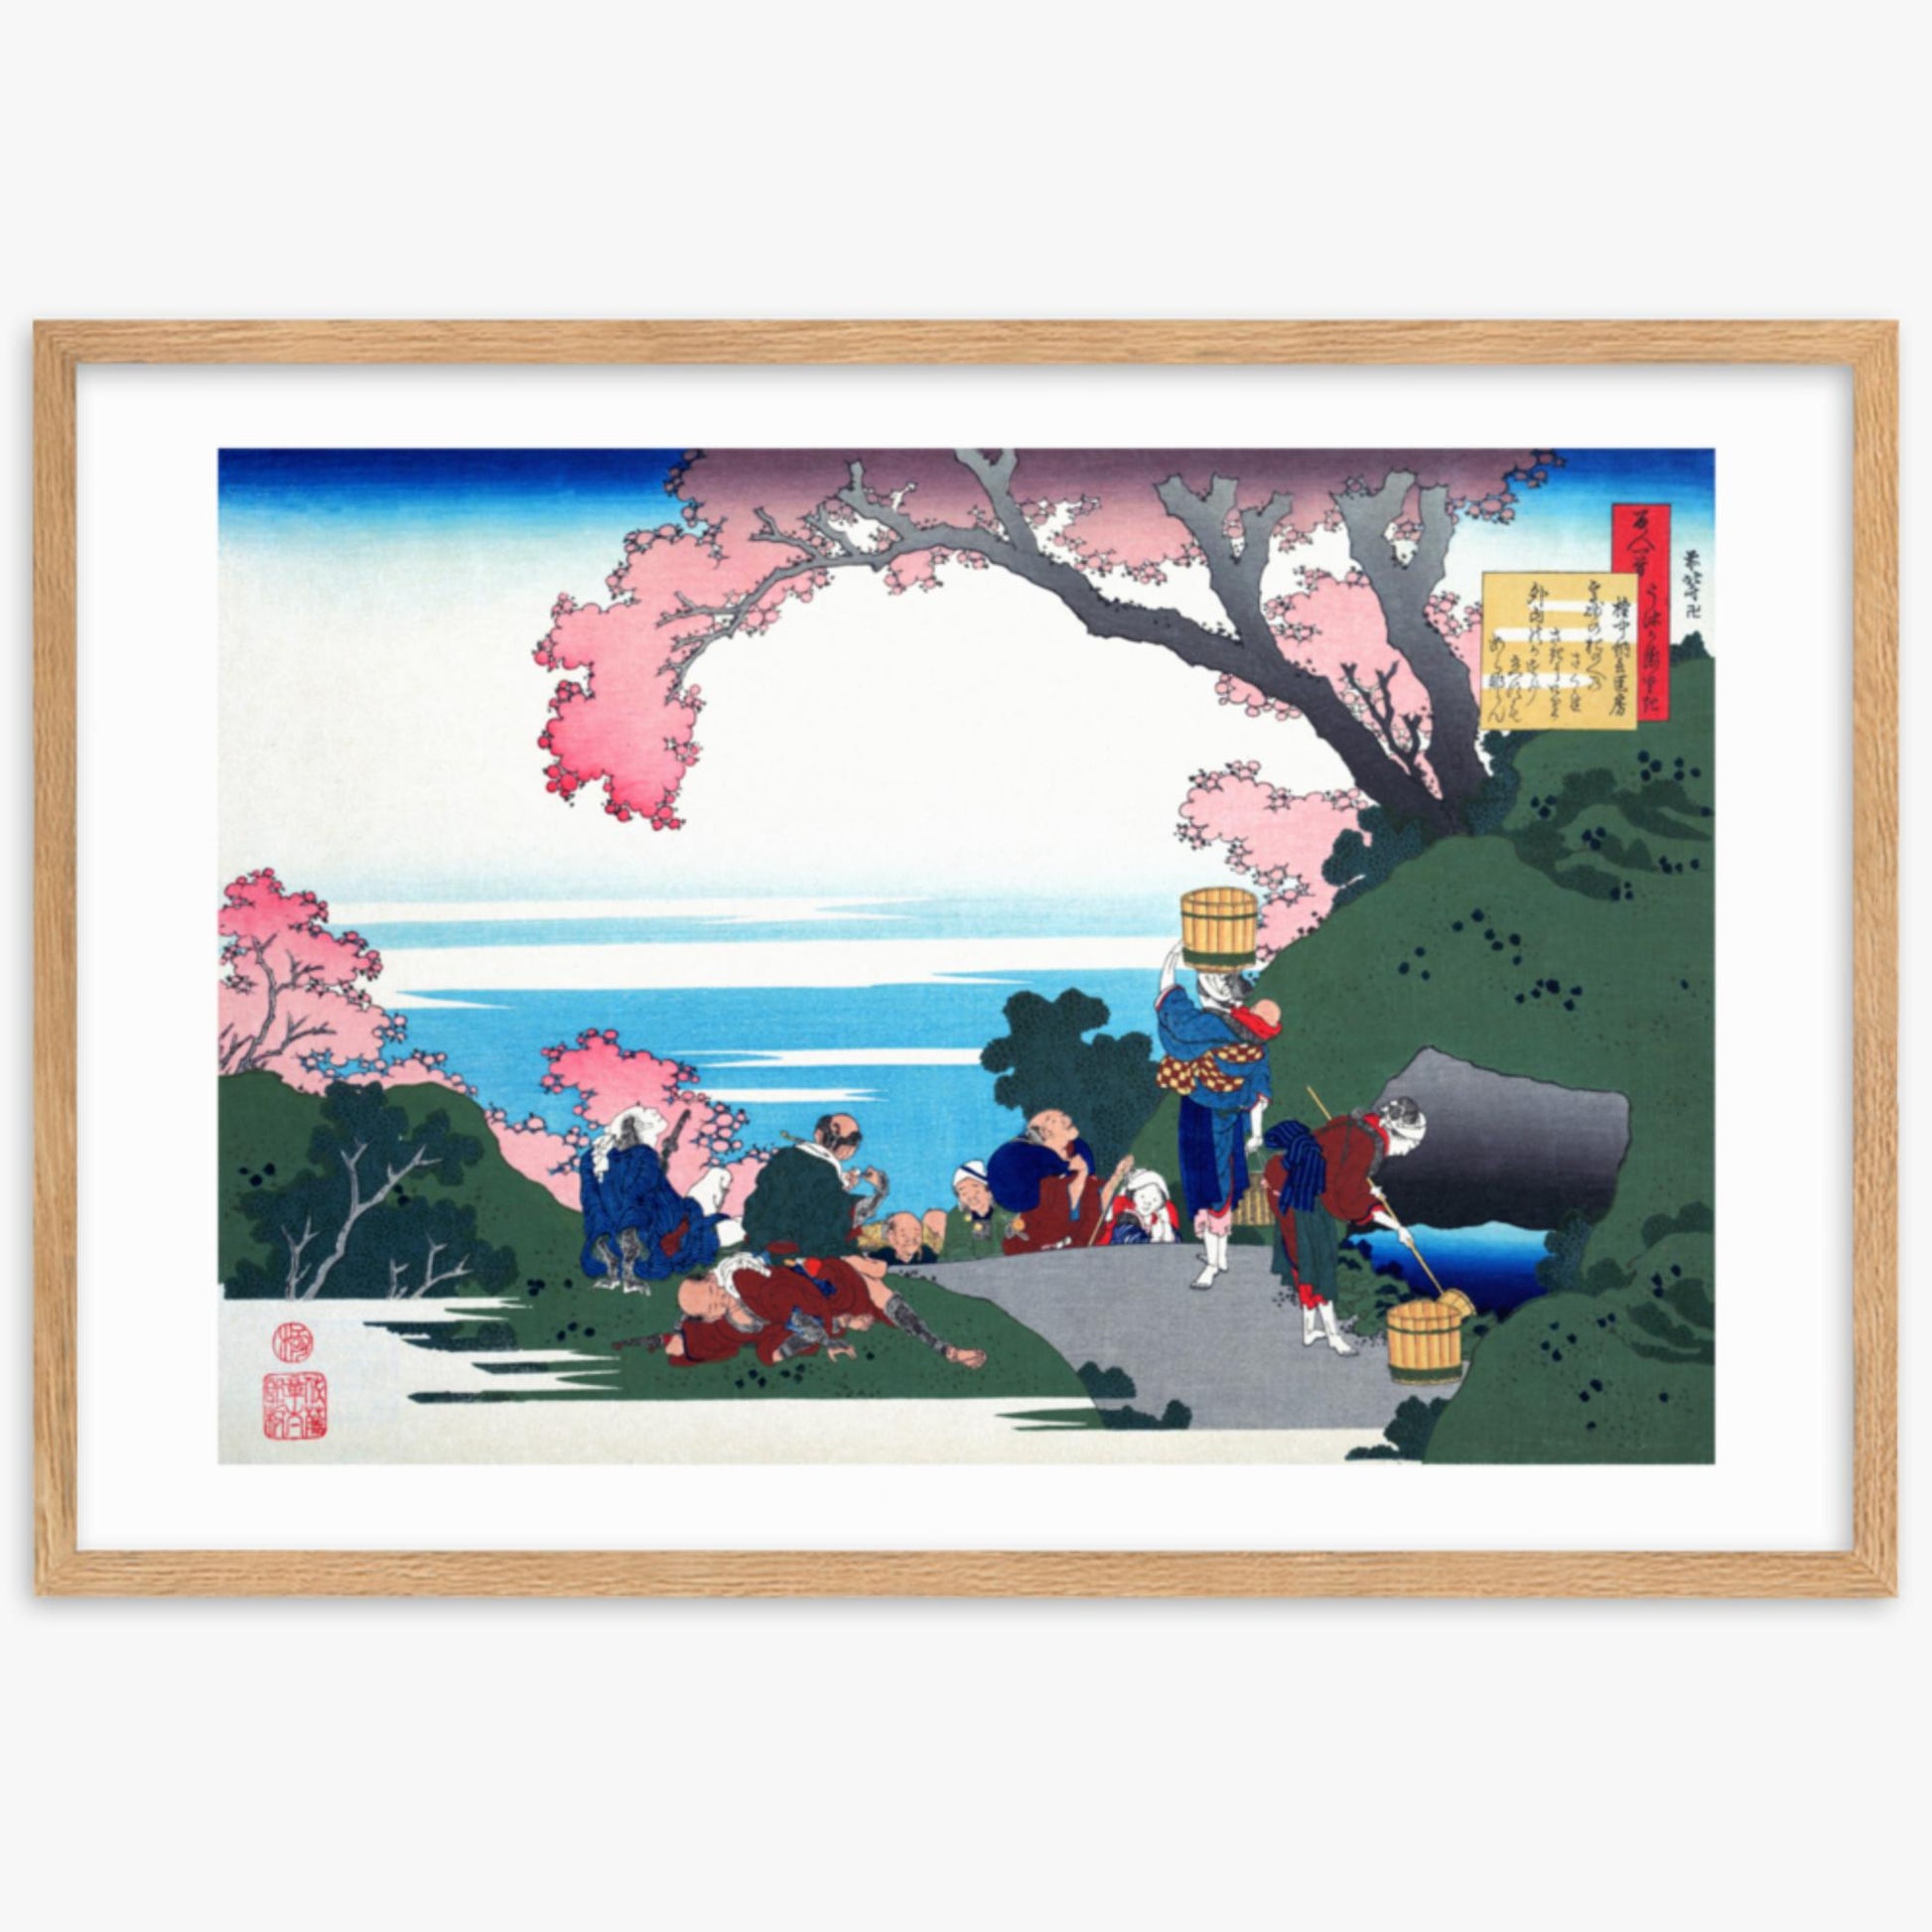 Katsushika Hokusai - Poem by Gon-chûnagon Masafusa 61x91 cm Poster With Oak Frame